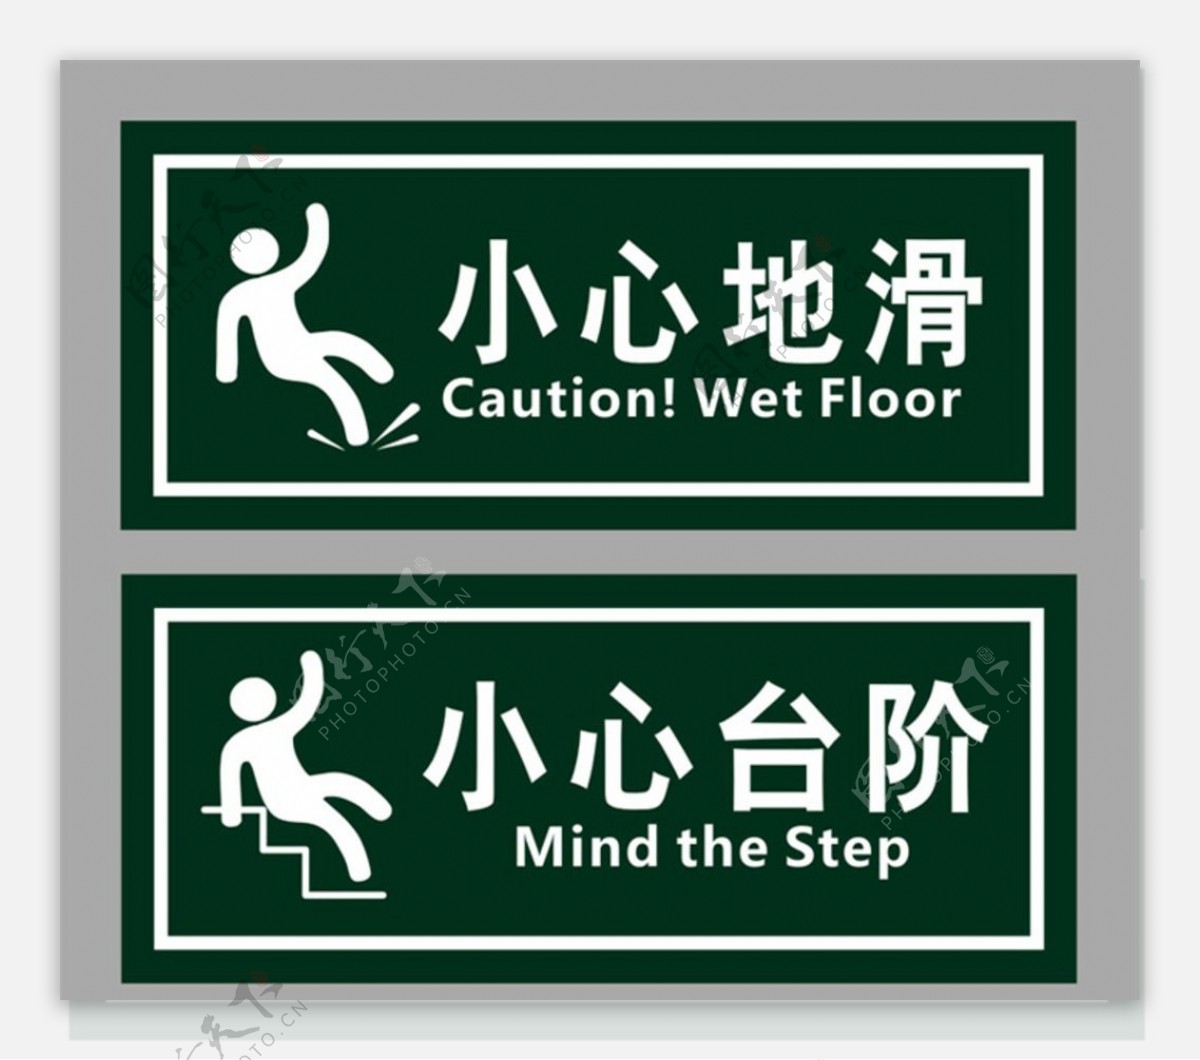 小心地滑小心台阶